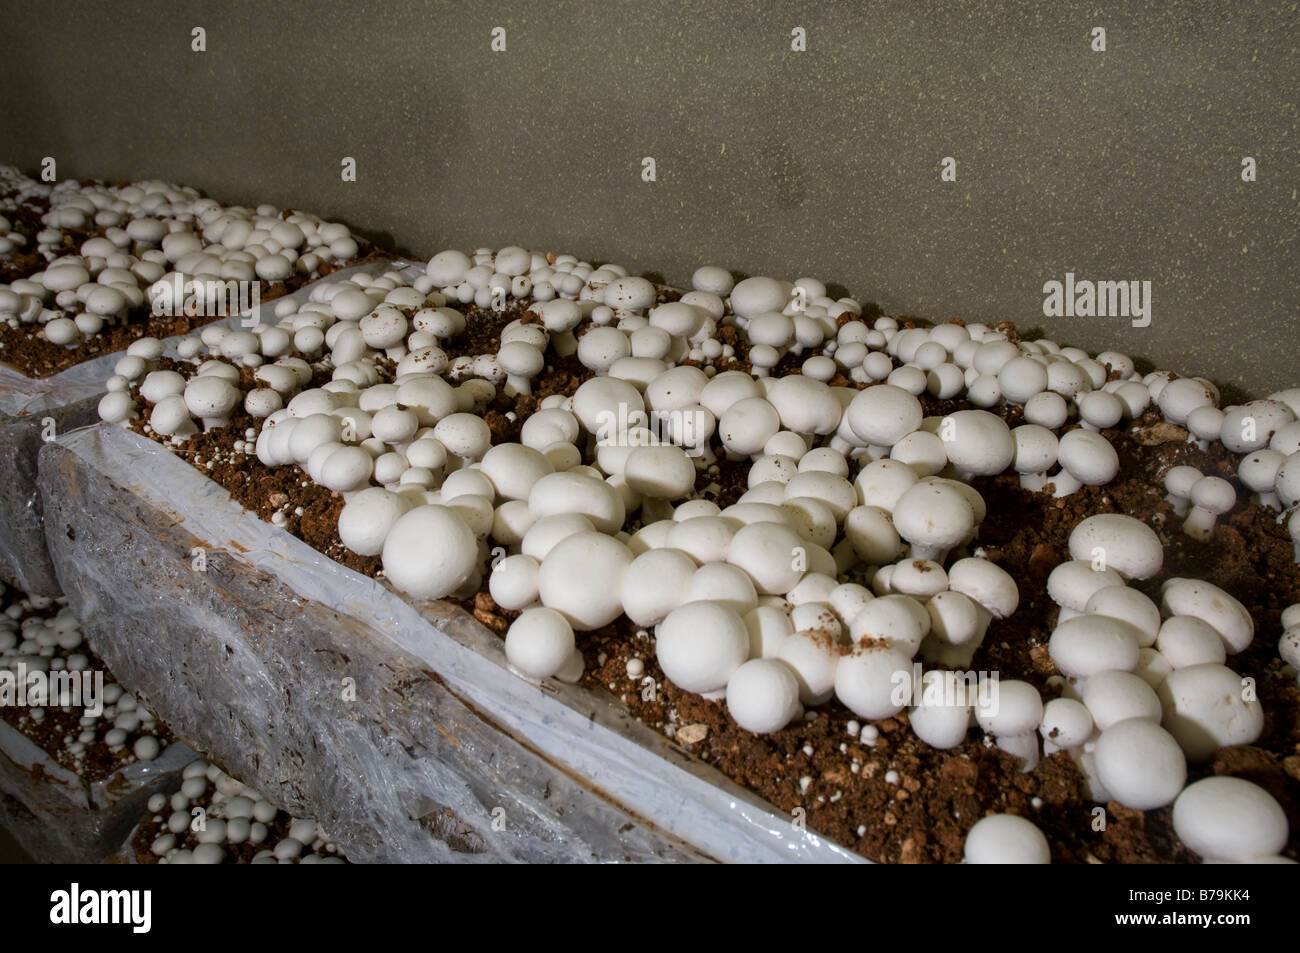 Agaricus Bosforo (i funghi commestibili) cresce dal compost organico in un sacchetto di plastica. Agricoltura intensiva impianto. Foto Stock